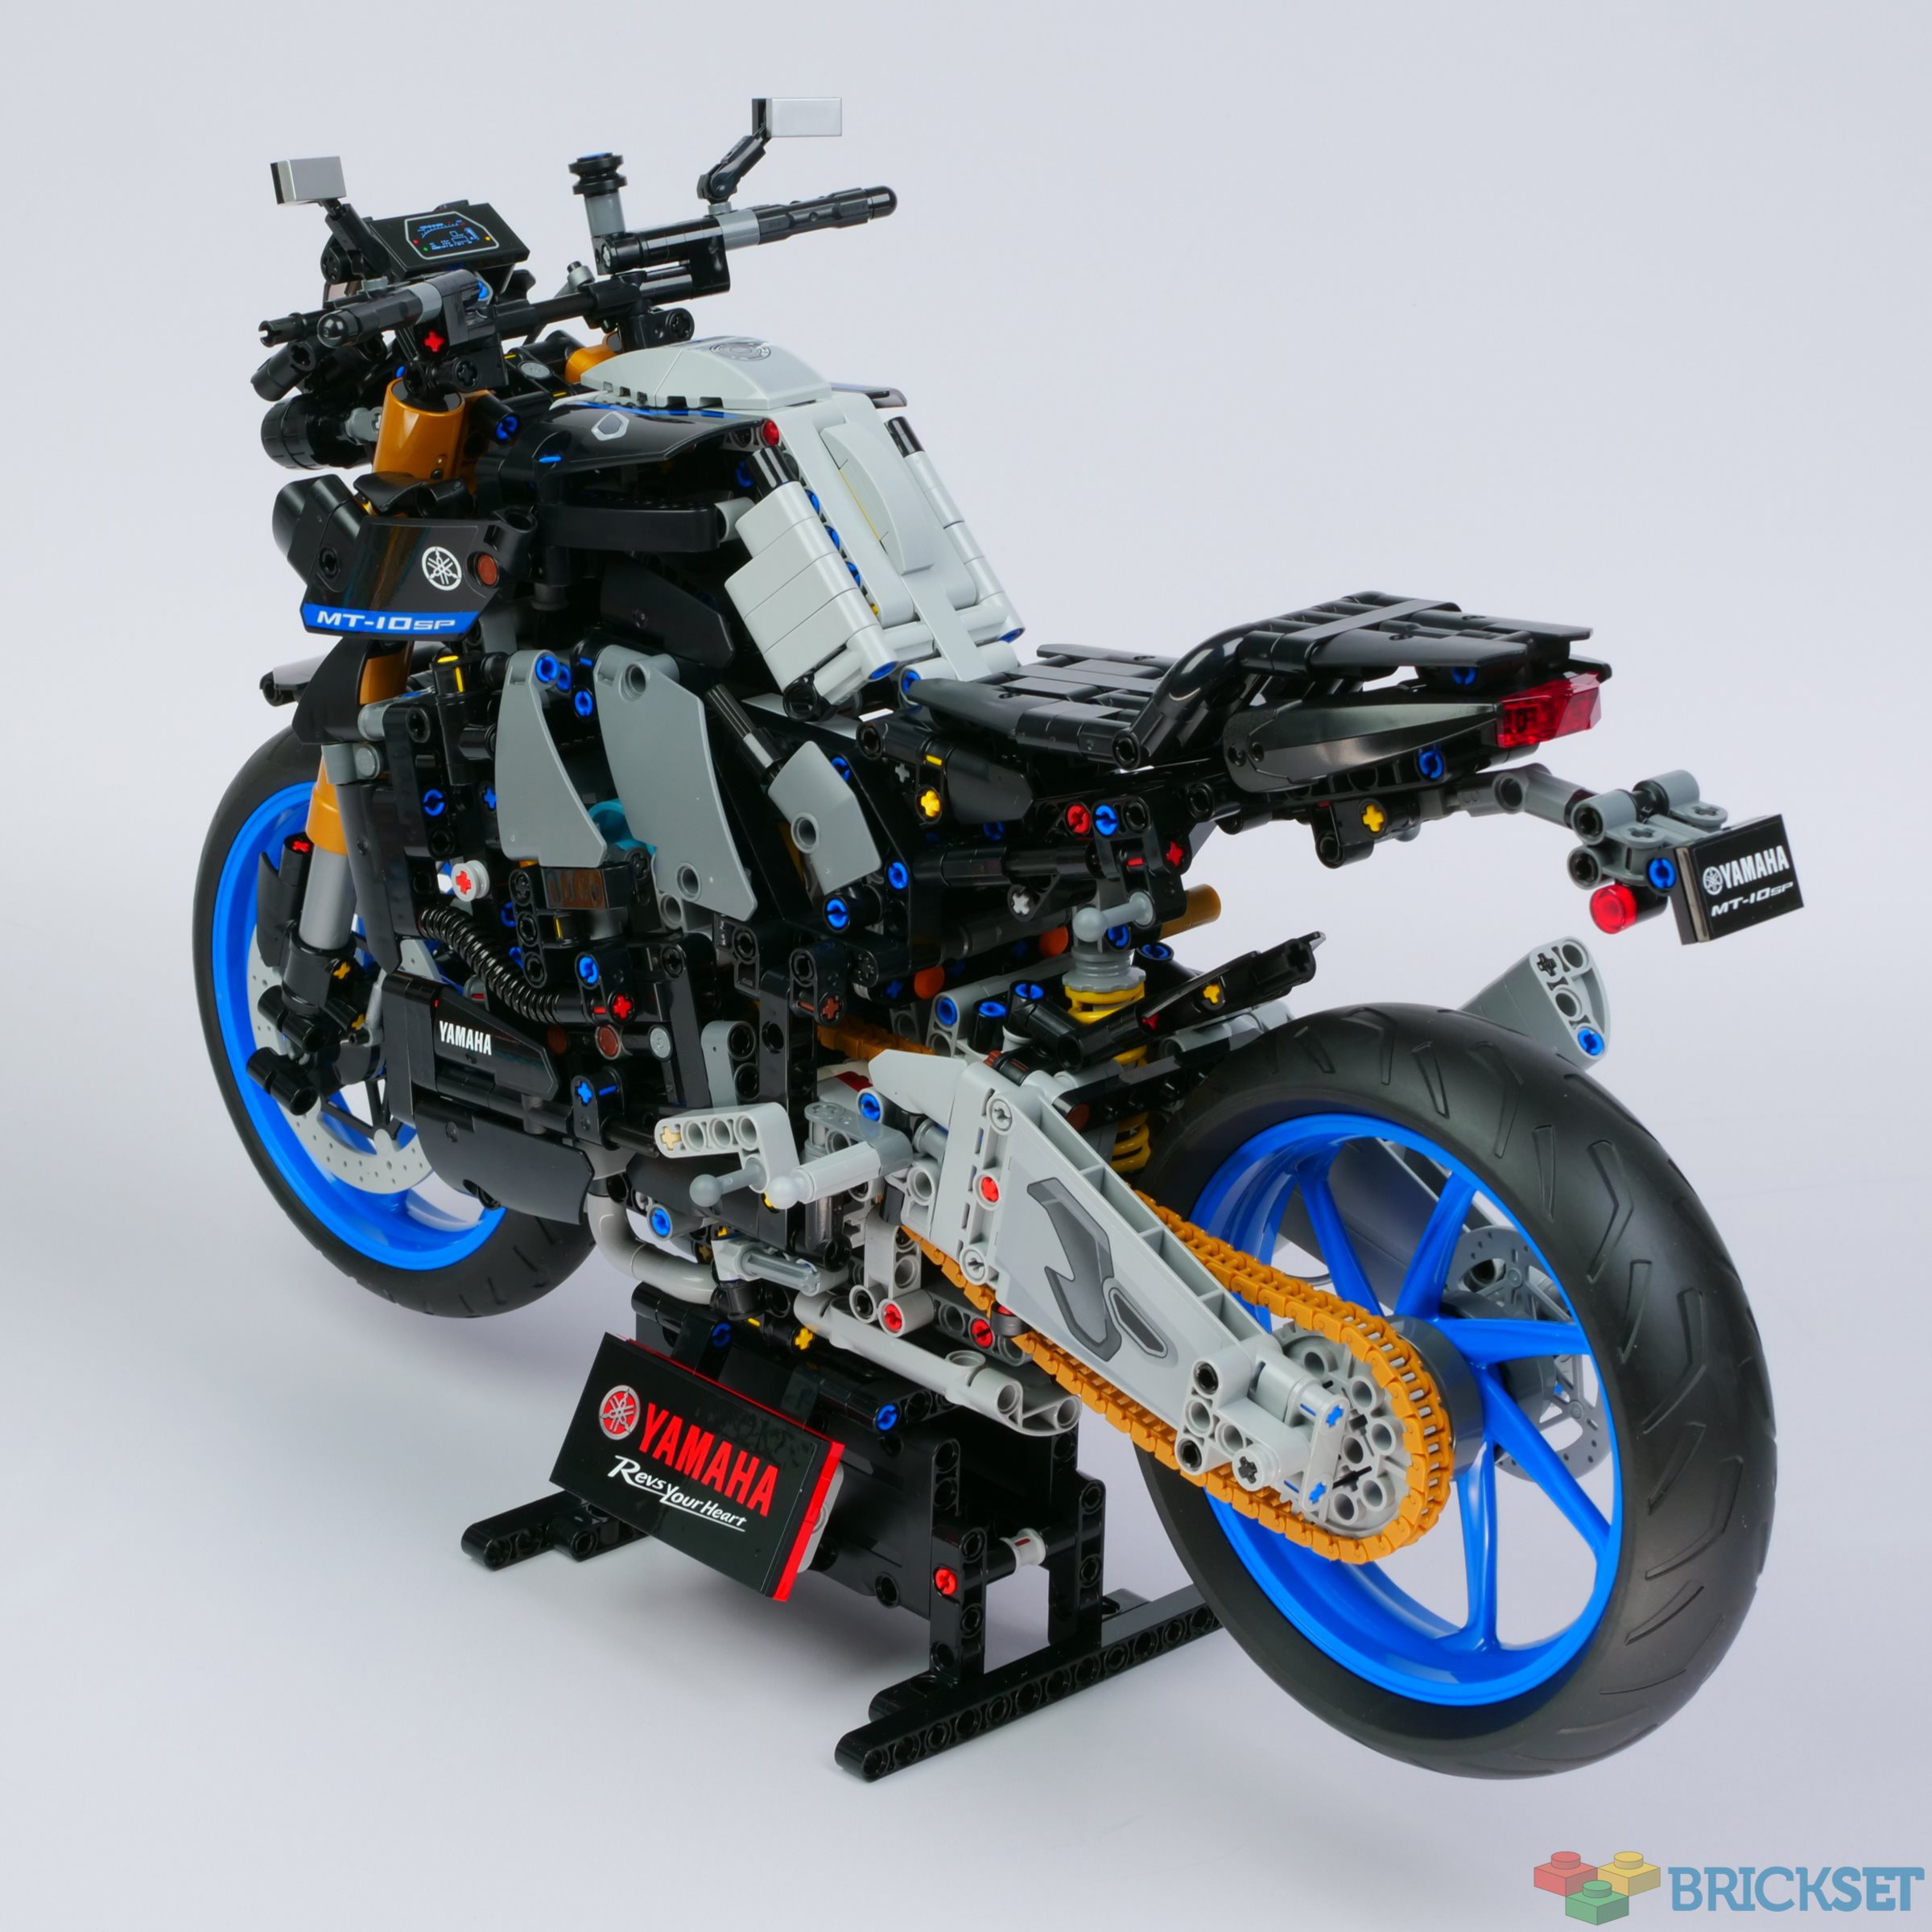 LEGO 1:5 Bikes Comparison, LEGO 42159 vs 42130